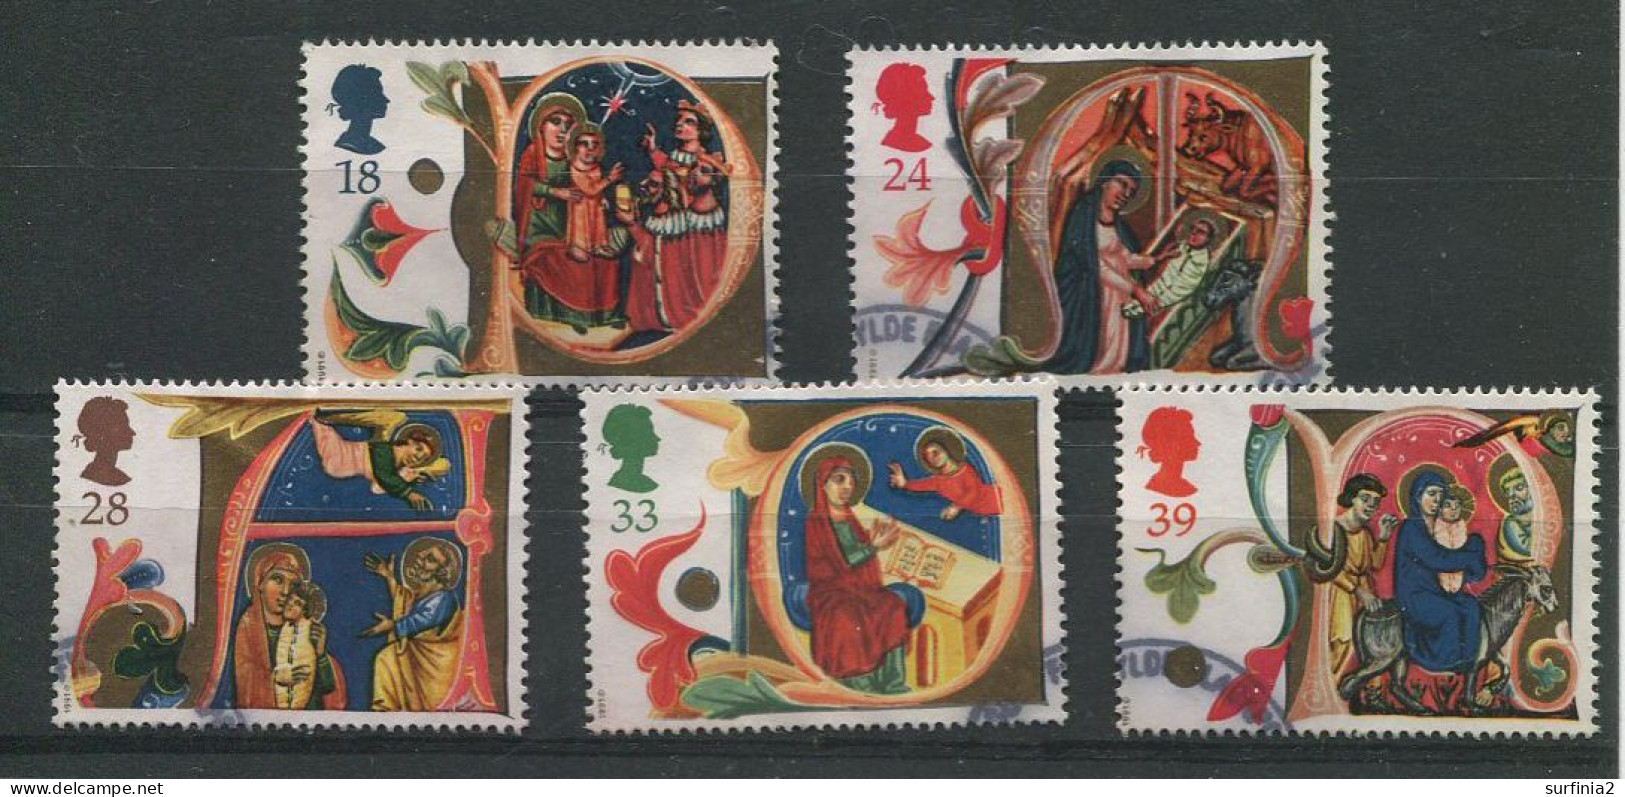 STAMPS - 1991 CHRISTMAS SET VFU - Used Stamps